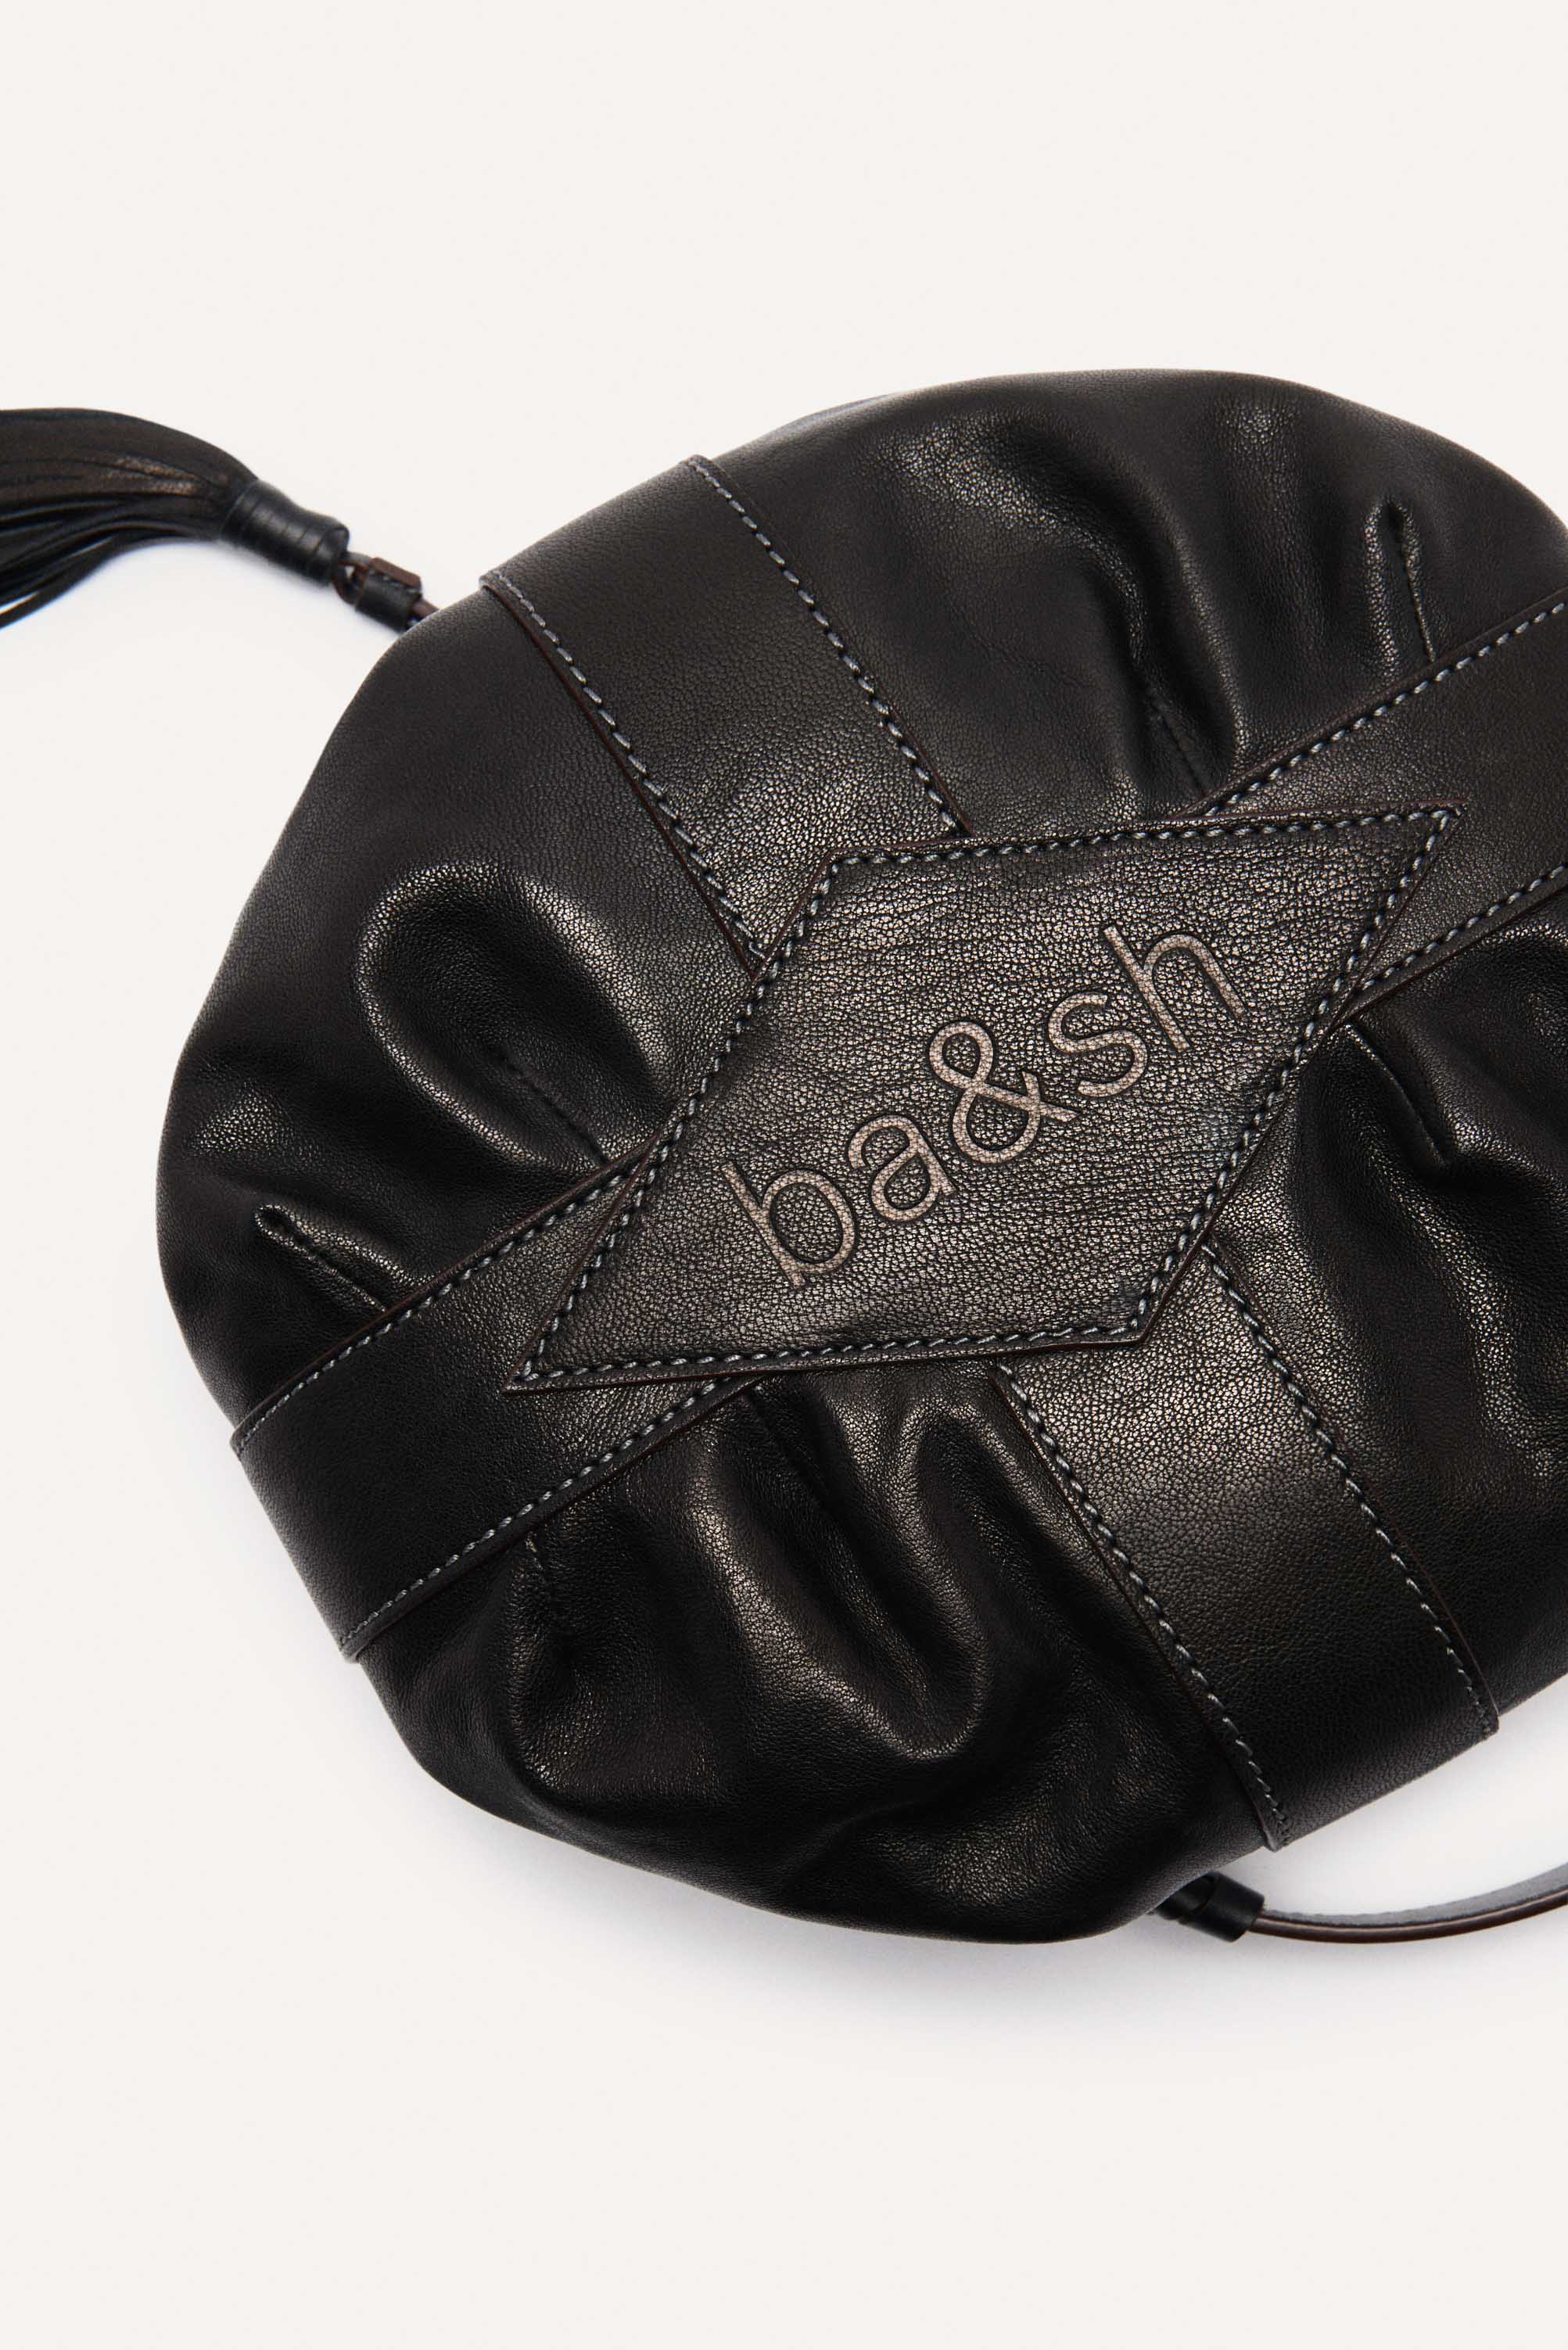 Ba&Sh Dahlia Leather Bag